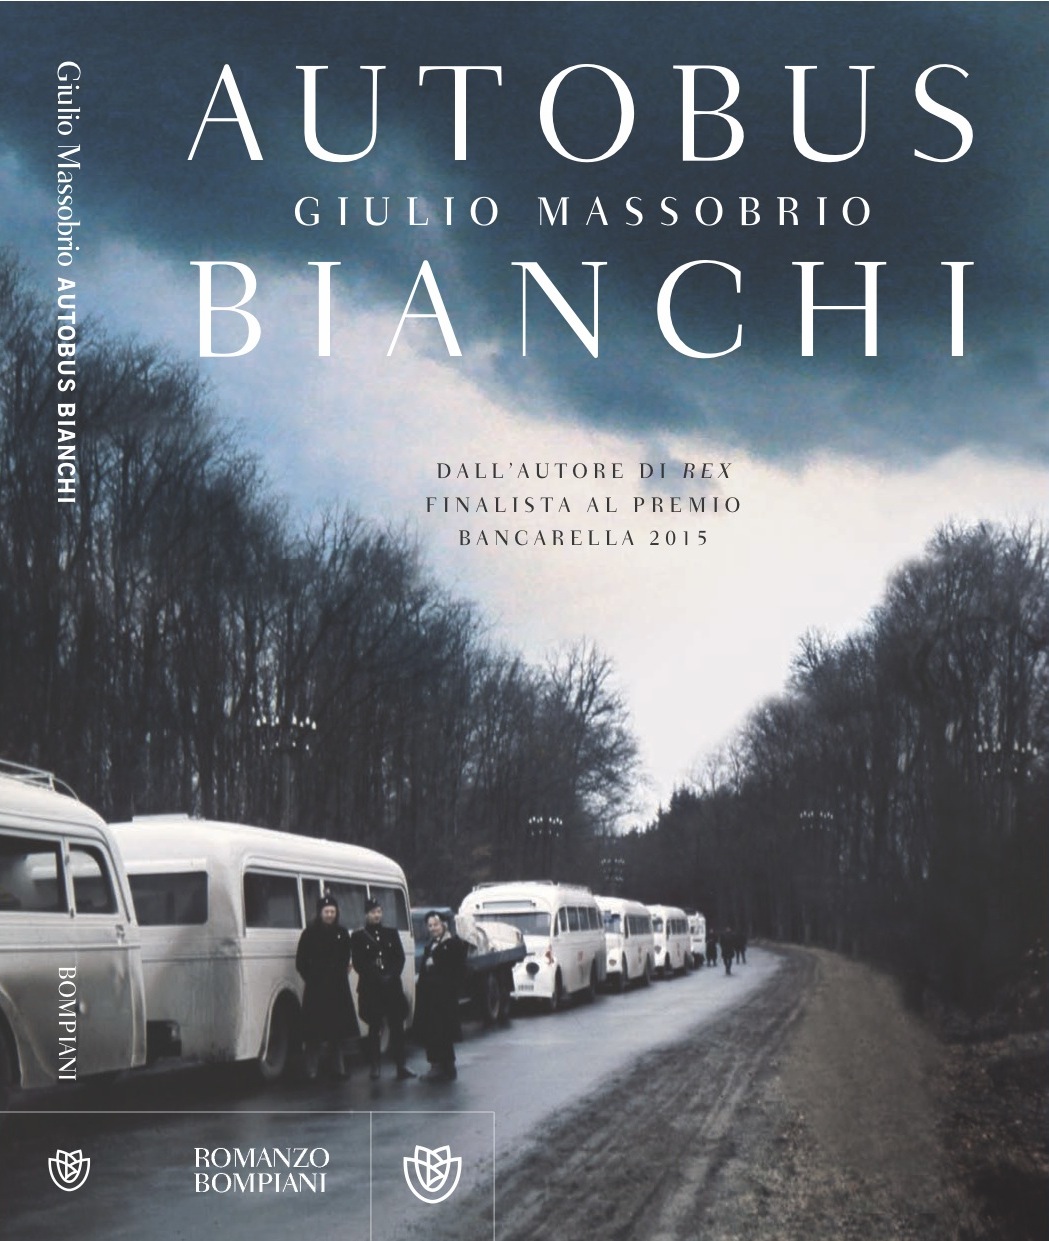 Giulio Massobrio presenta il suo nuovo libro “Autobus bianchi” – VIDEO